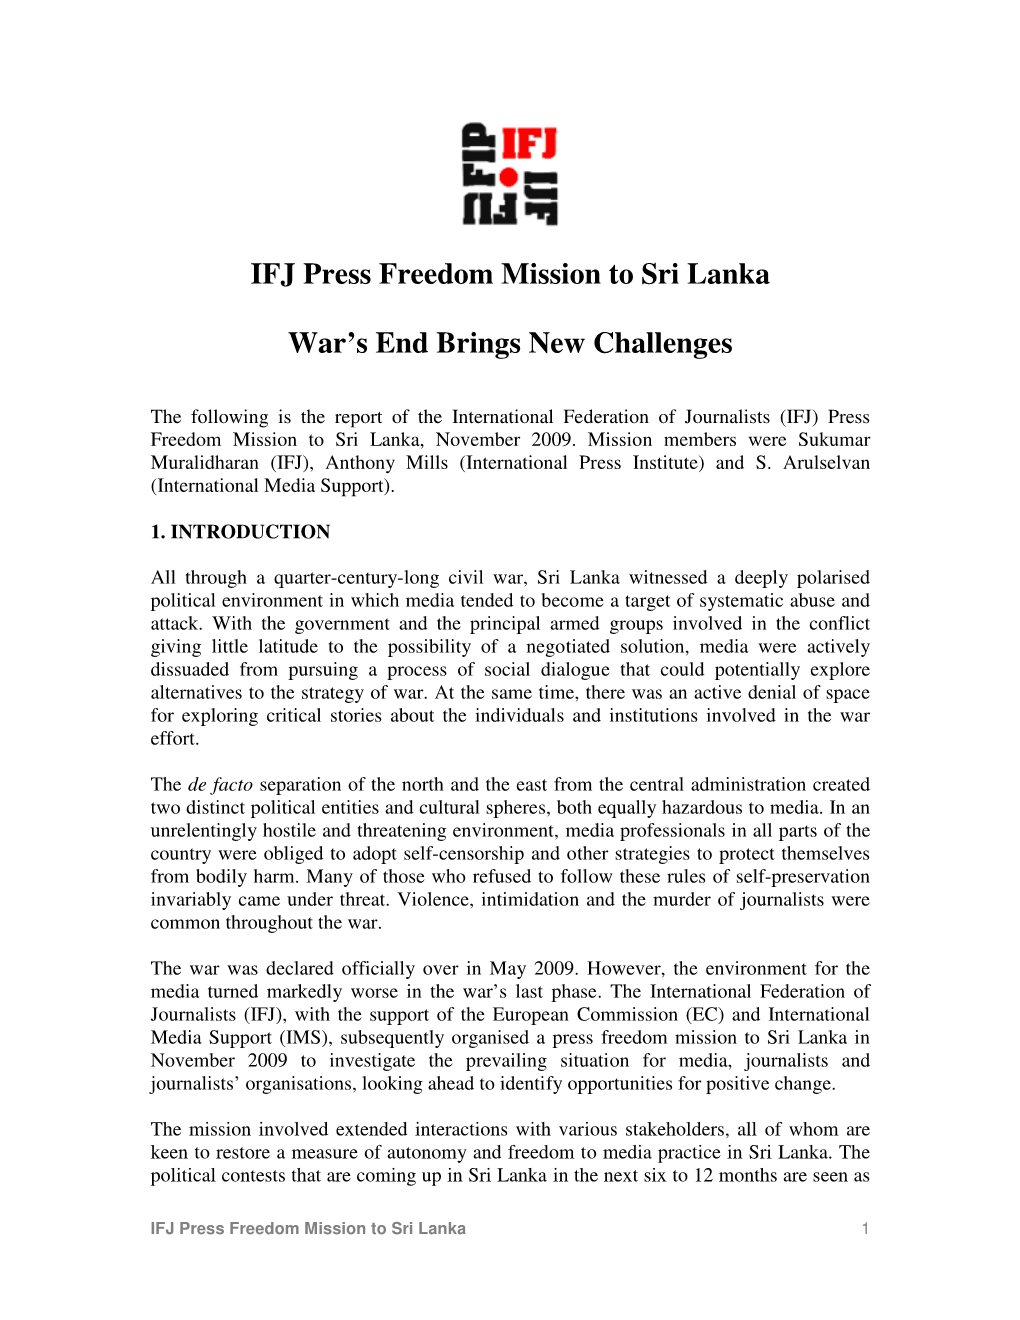 IFJ Press Freedom Mission to Sri Lanka War's End Brings New